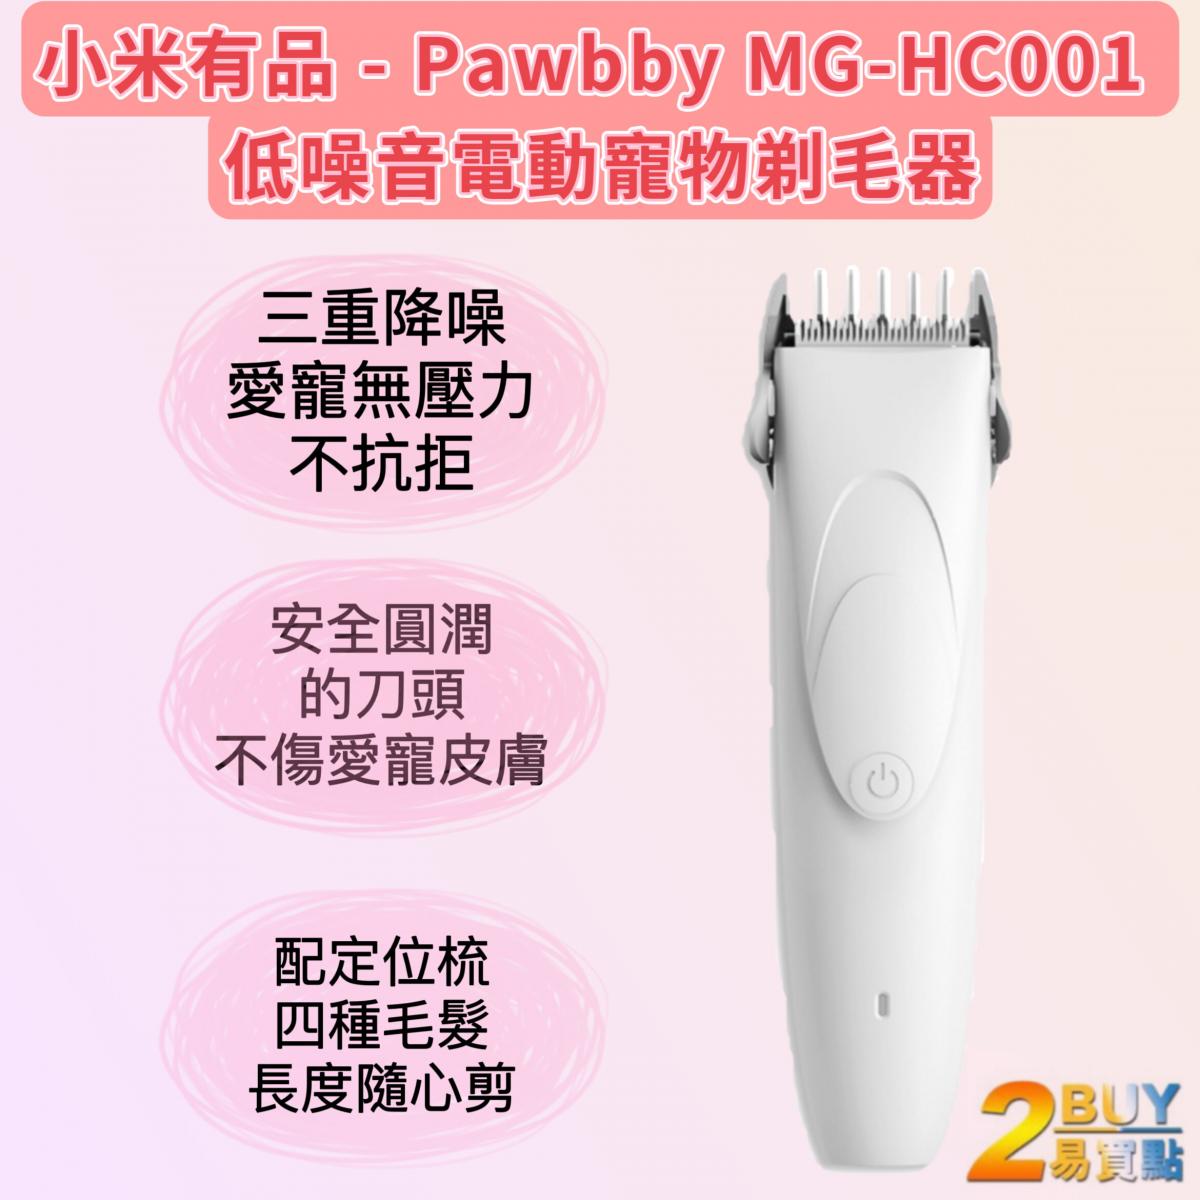 Pawbby 貓貓狗狗 低噪音電動寵物剃毛器 MG-HC001